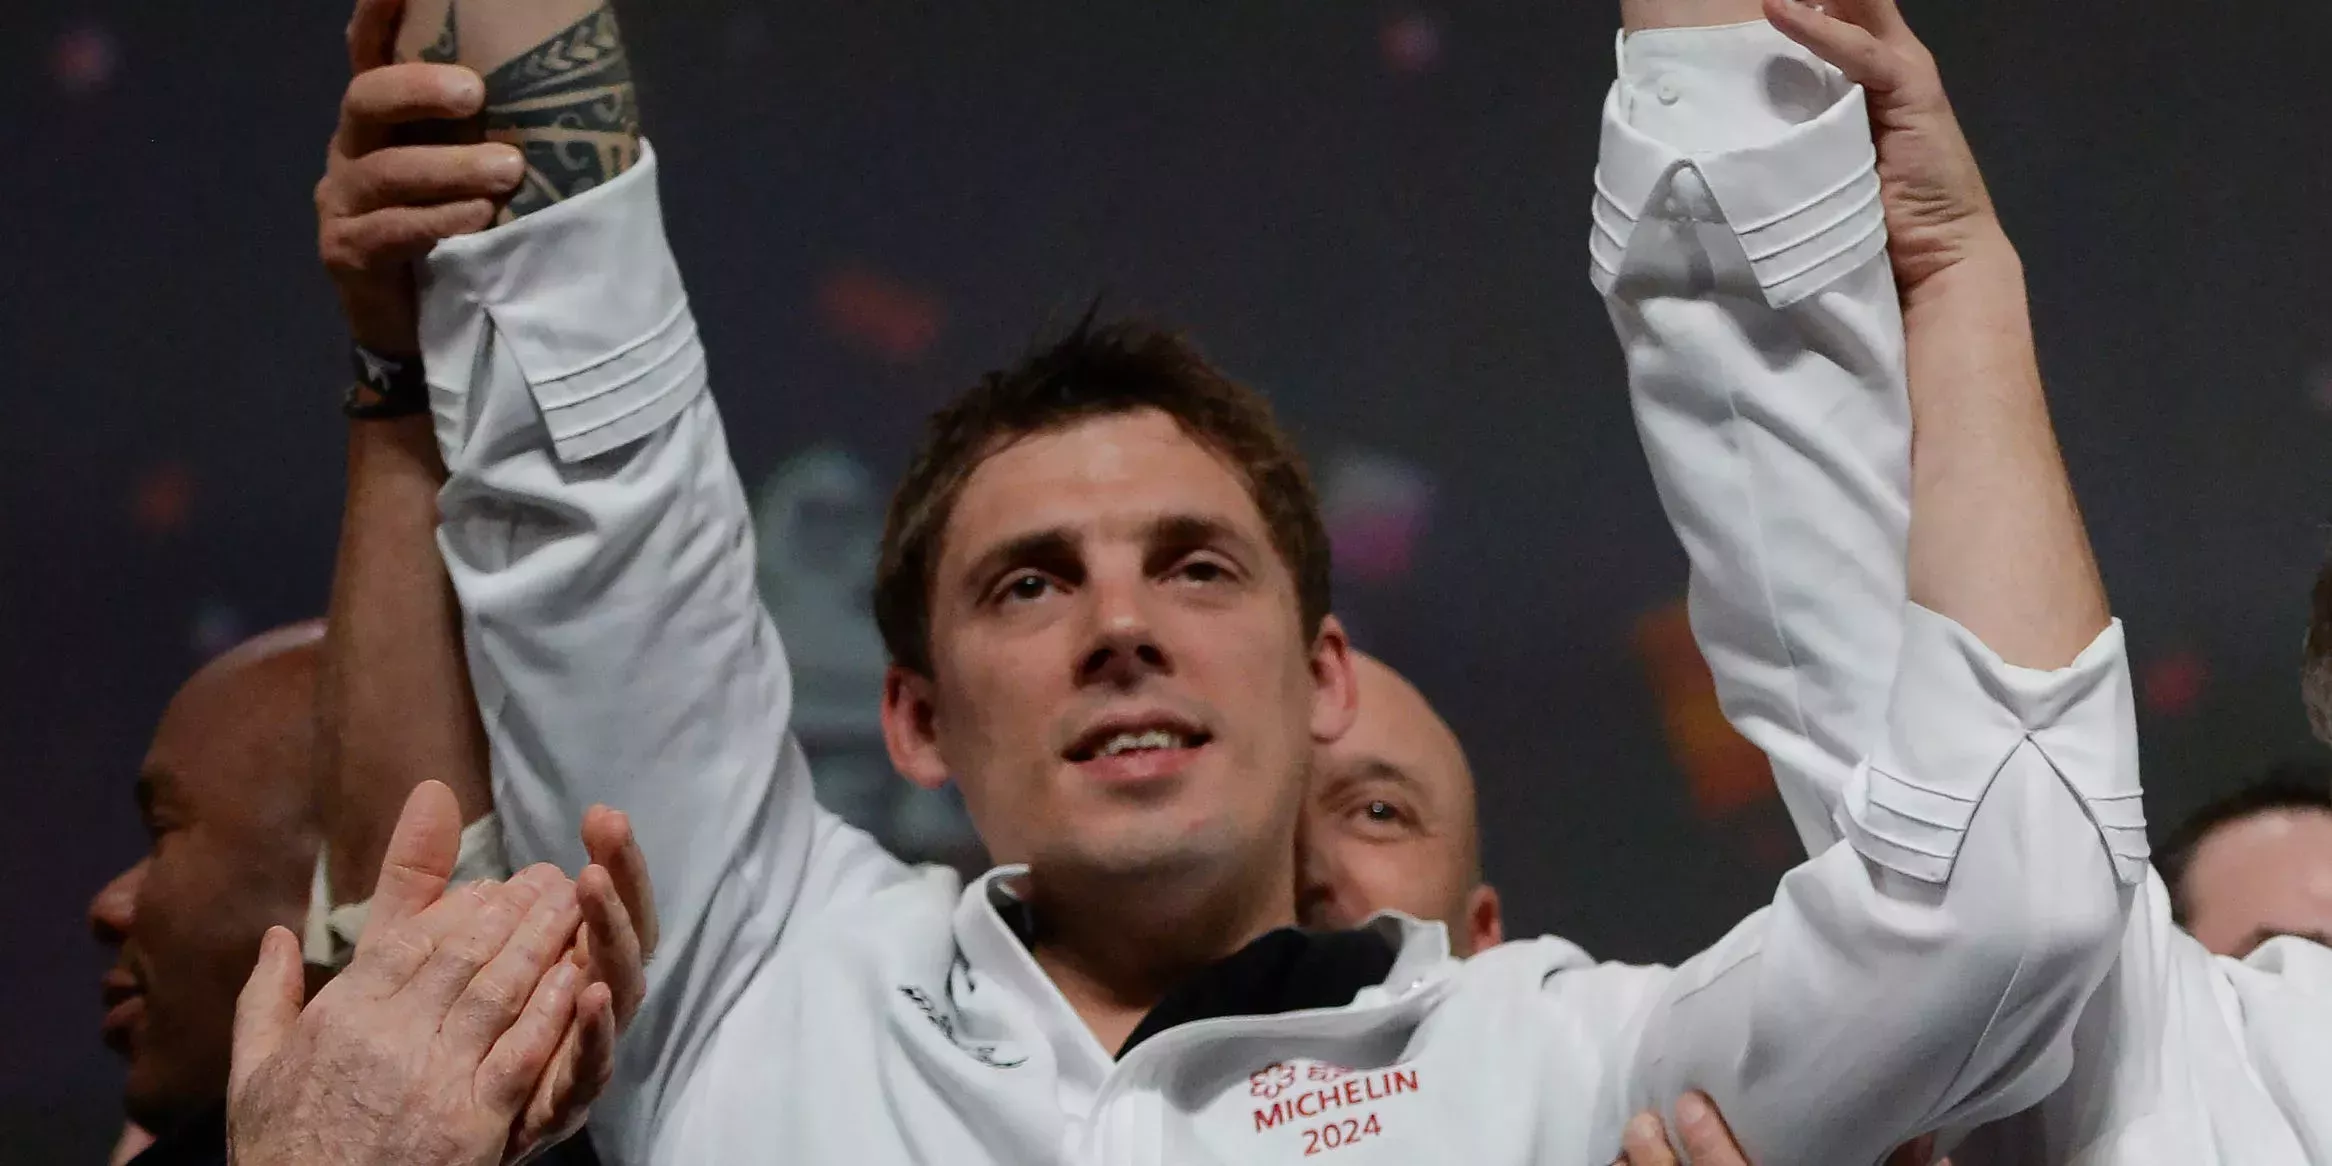 Un chef francés de 35 años acaba de ganar 3 estrellas Michelin, y ni siquiera es el más joven en conseguirlo.